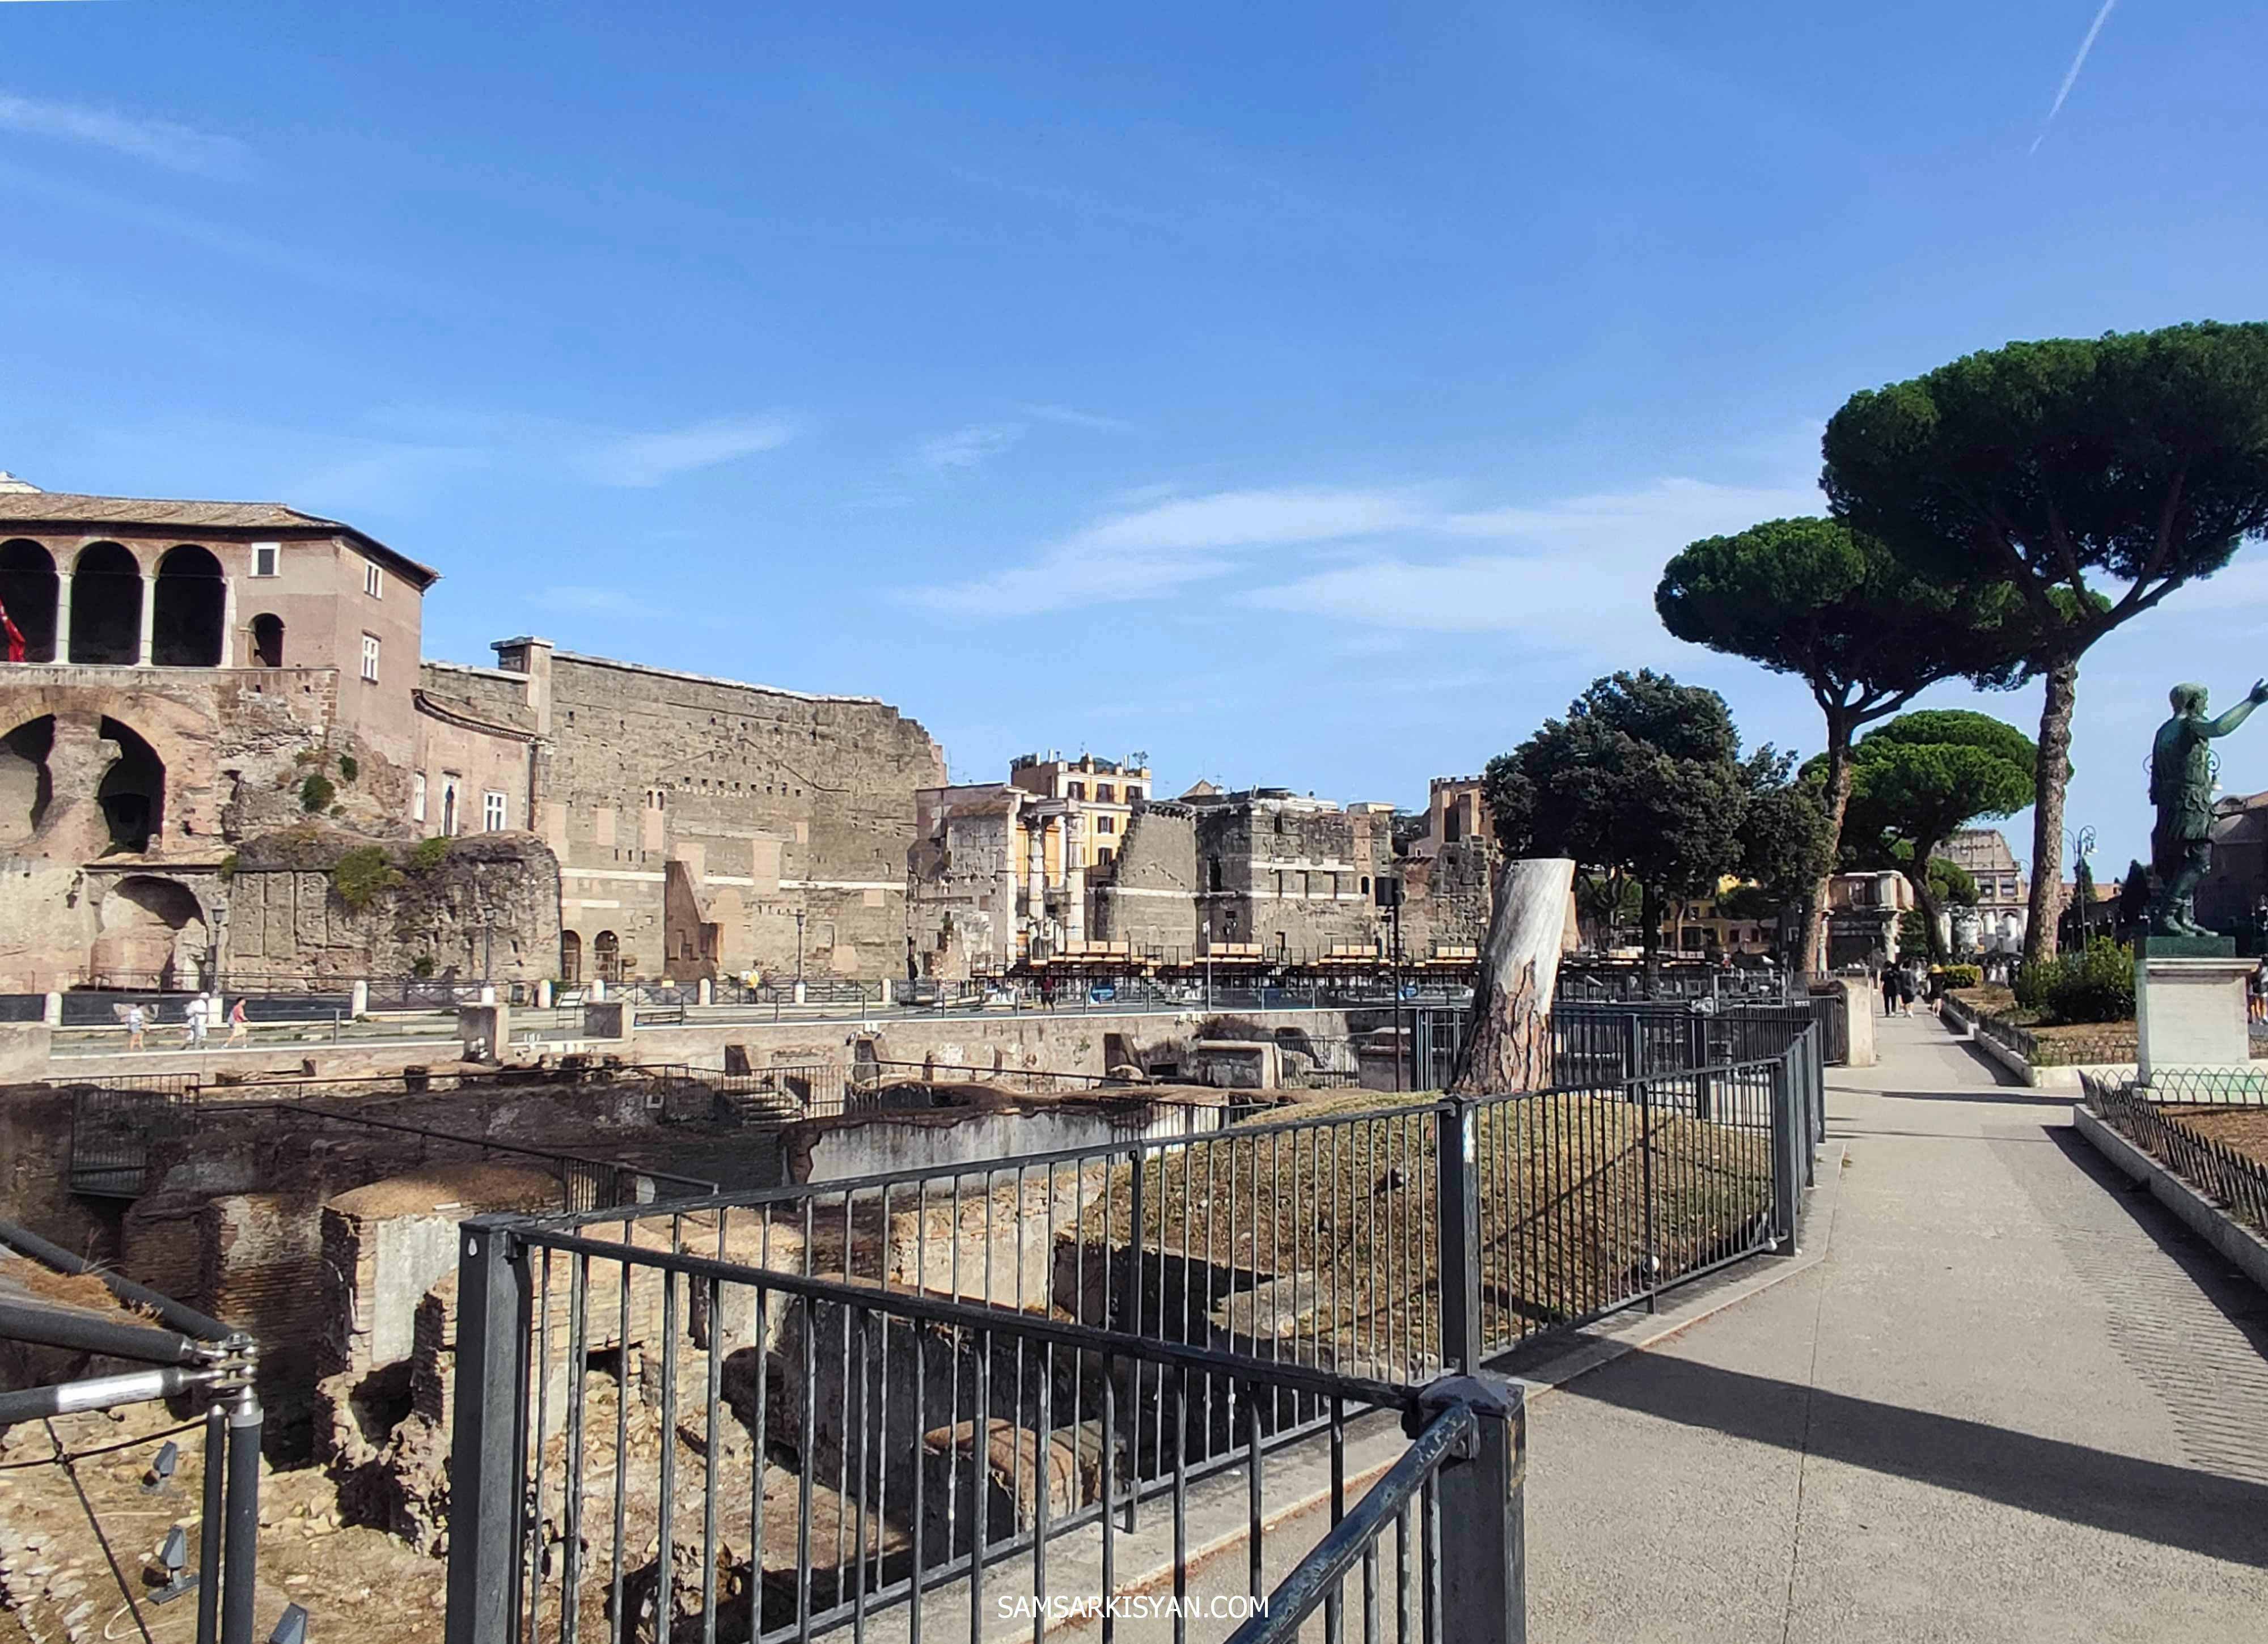 Forum of Augustus, Rome